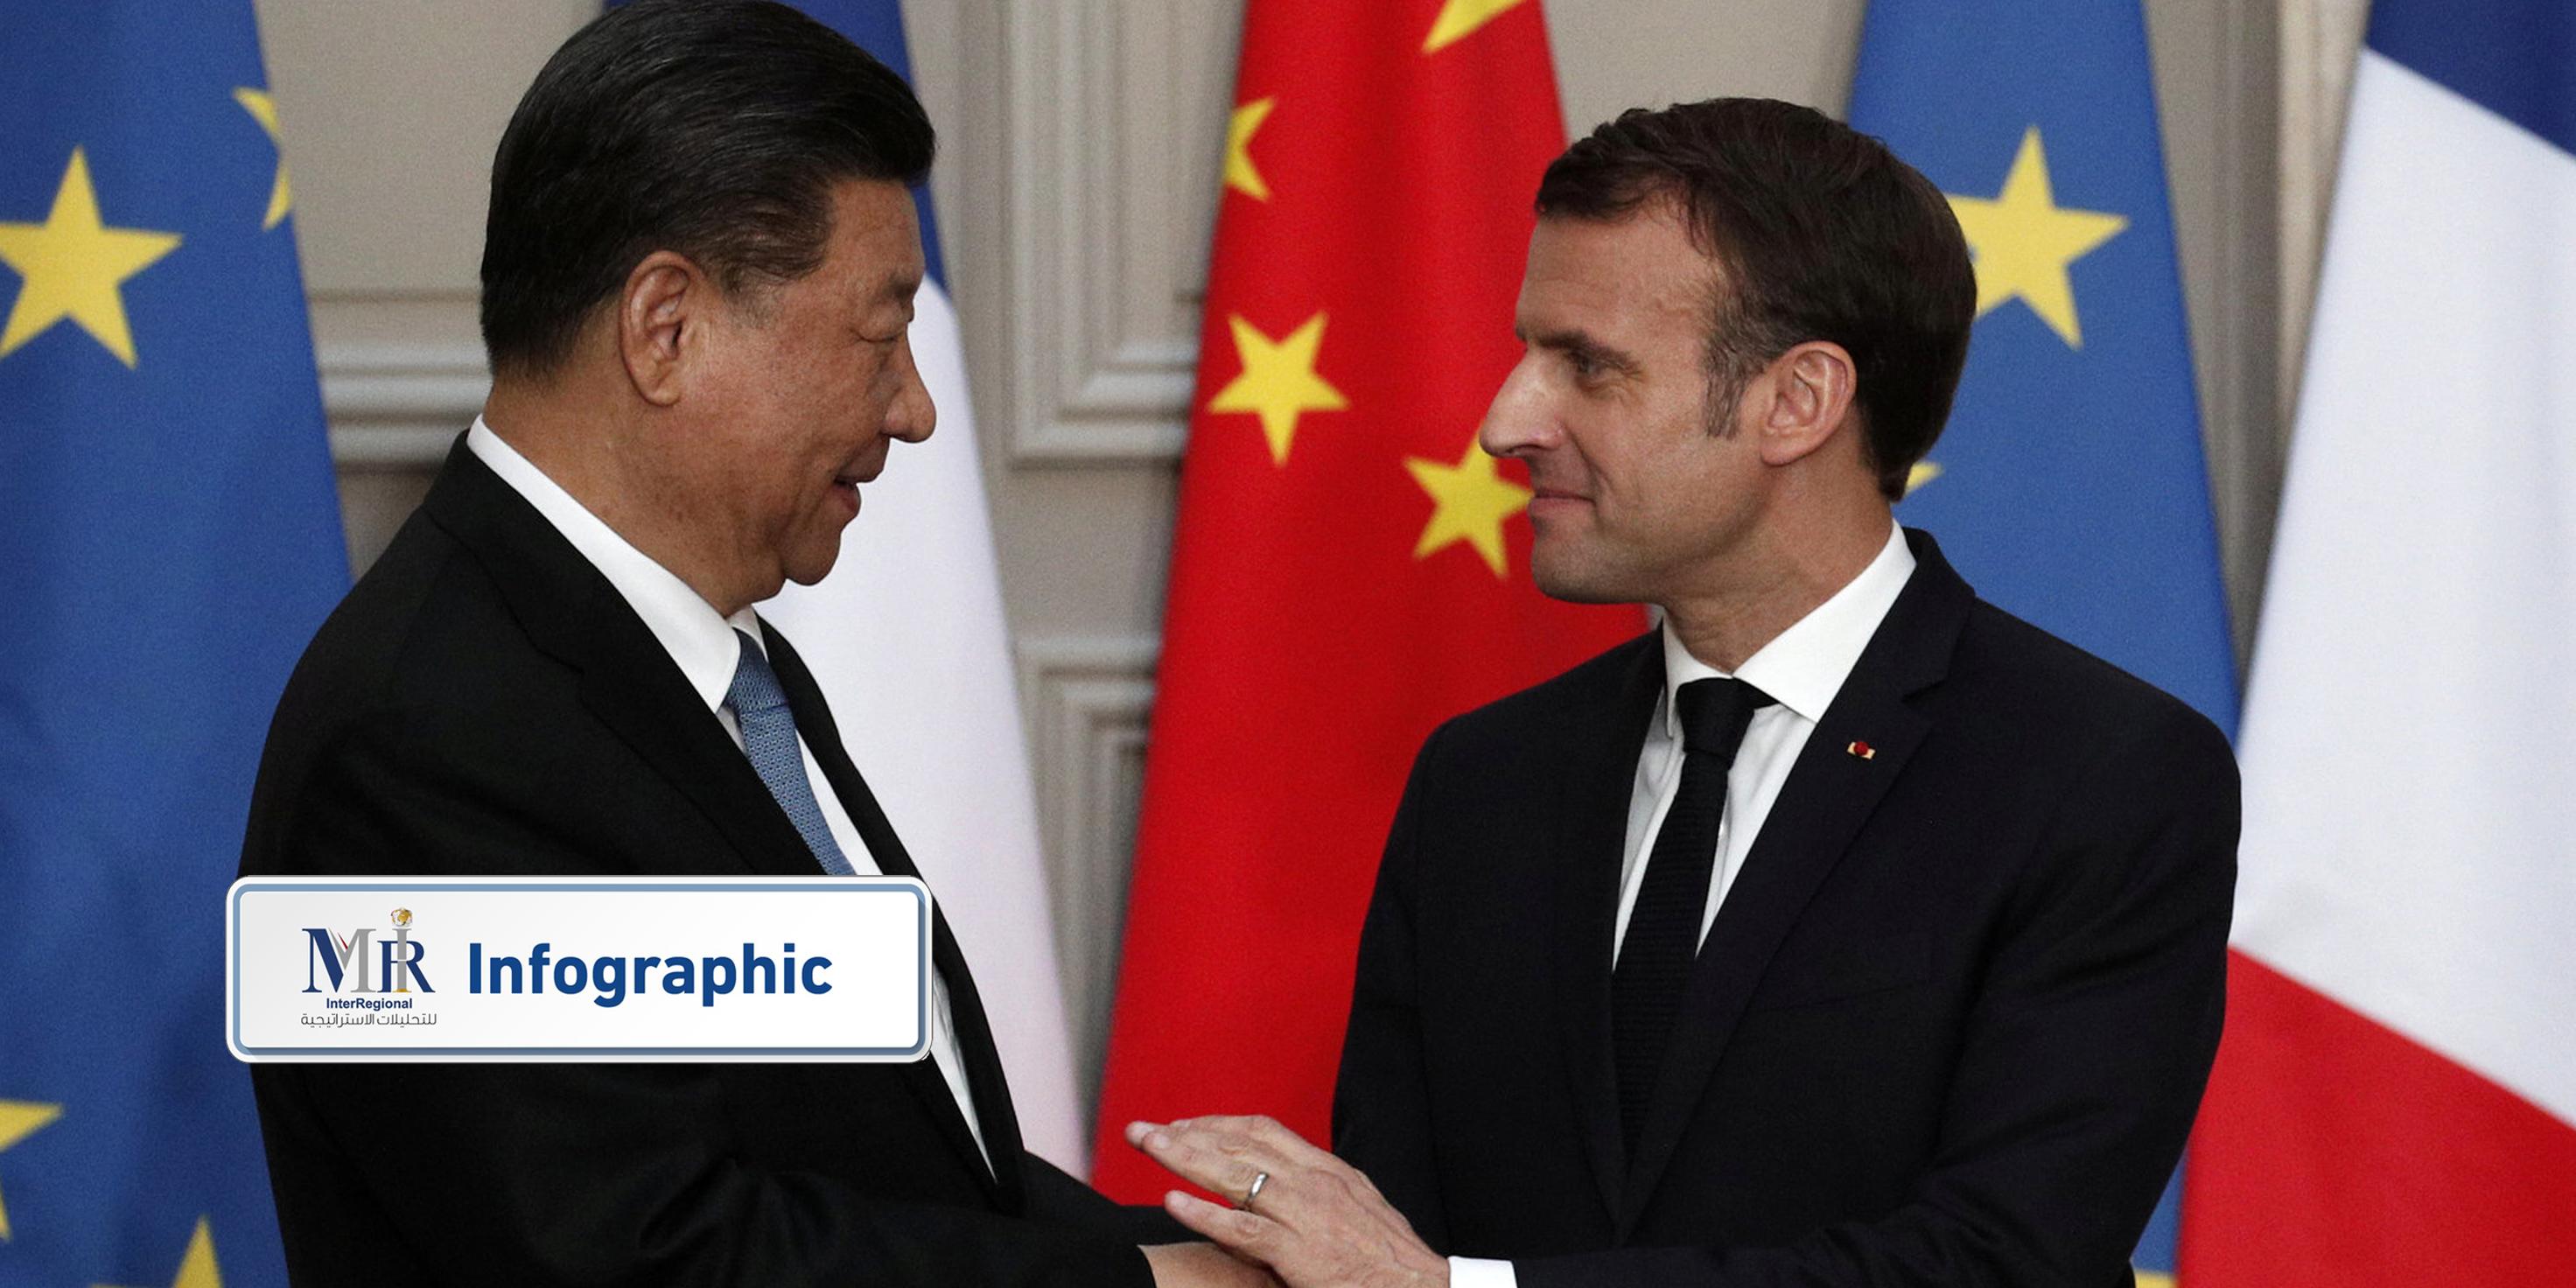 هل يدعم الفرنسيون توجه ماكرون لإعادة التوازن للعلاقات مع الصين؟ (إنفوجرافيك)